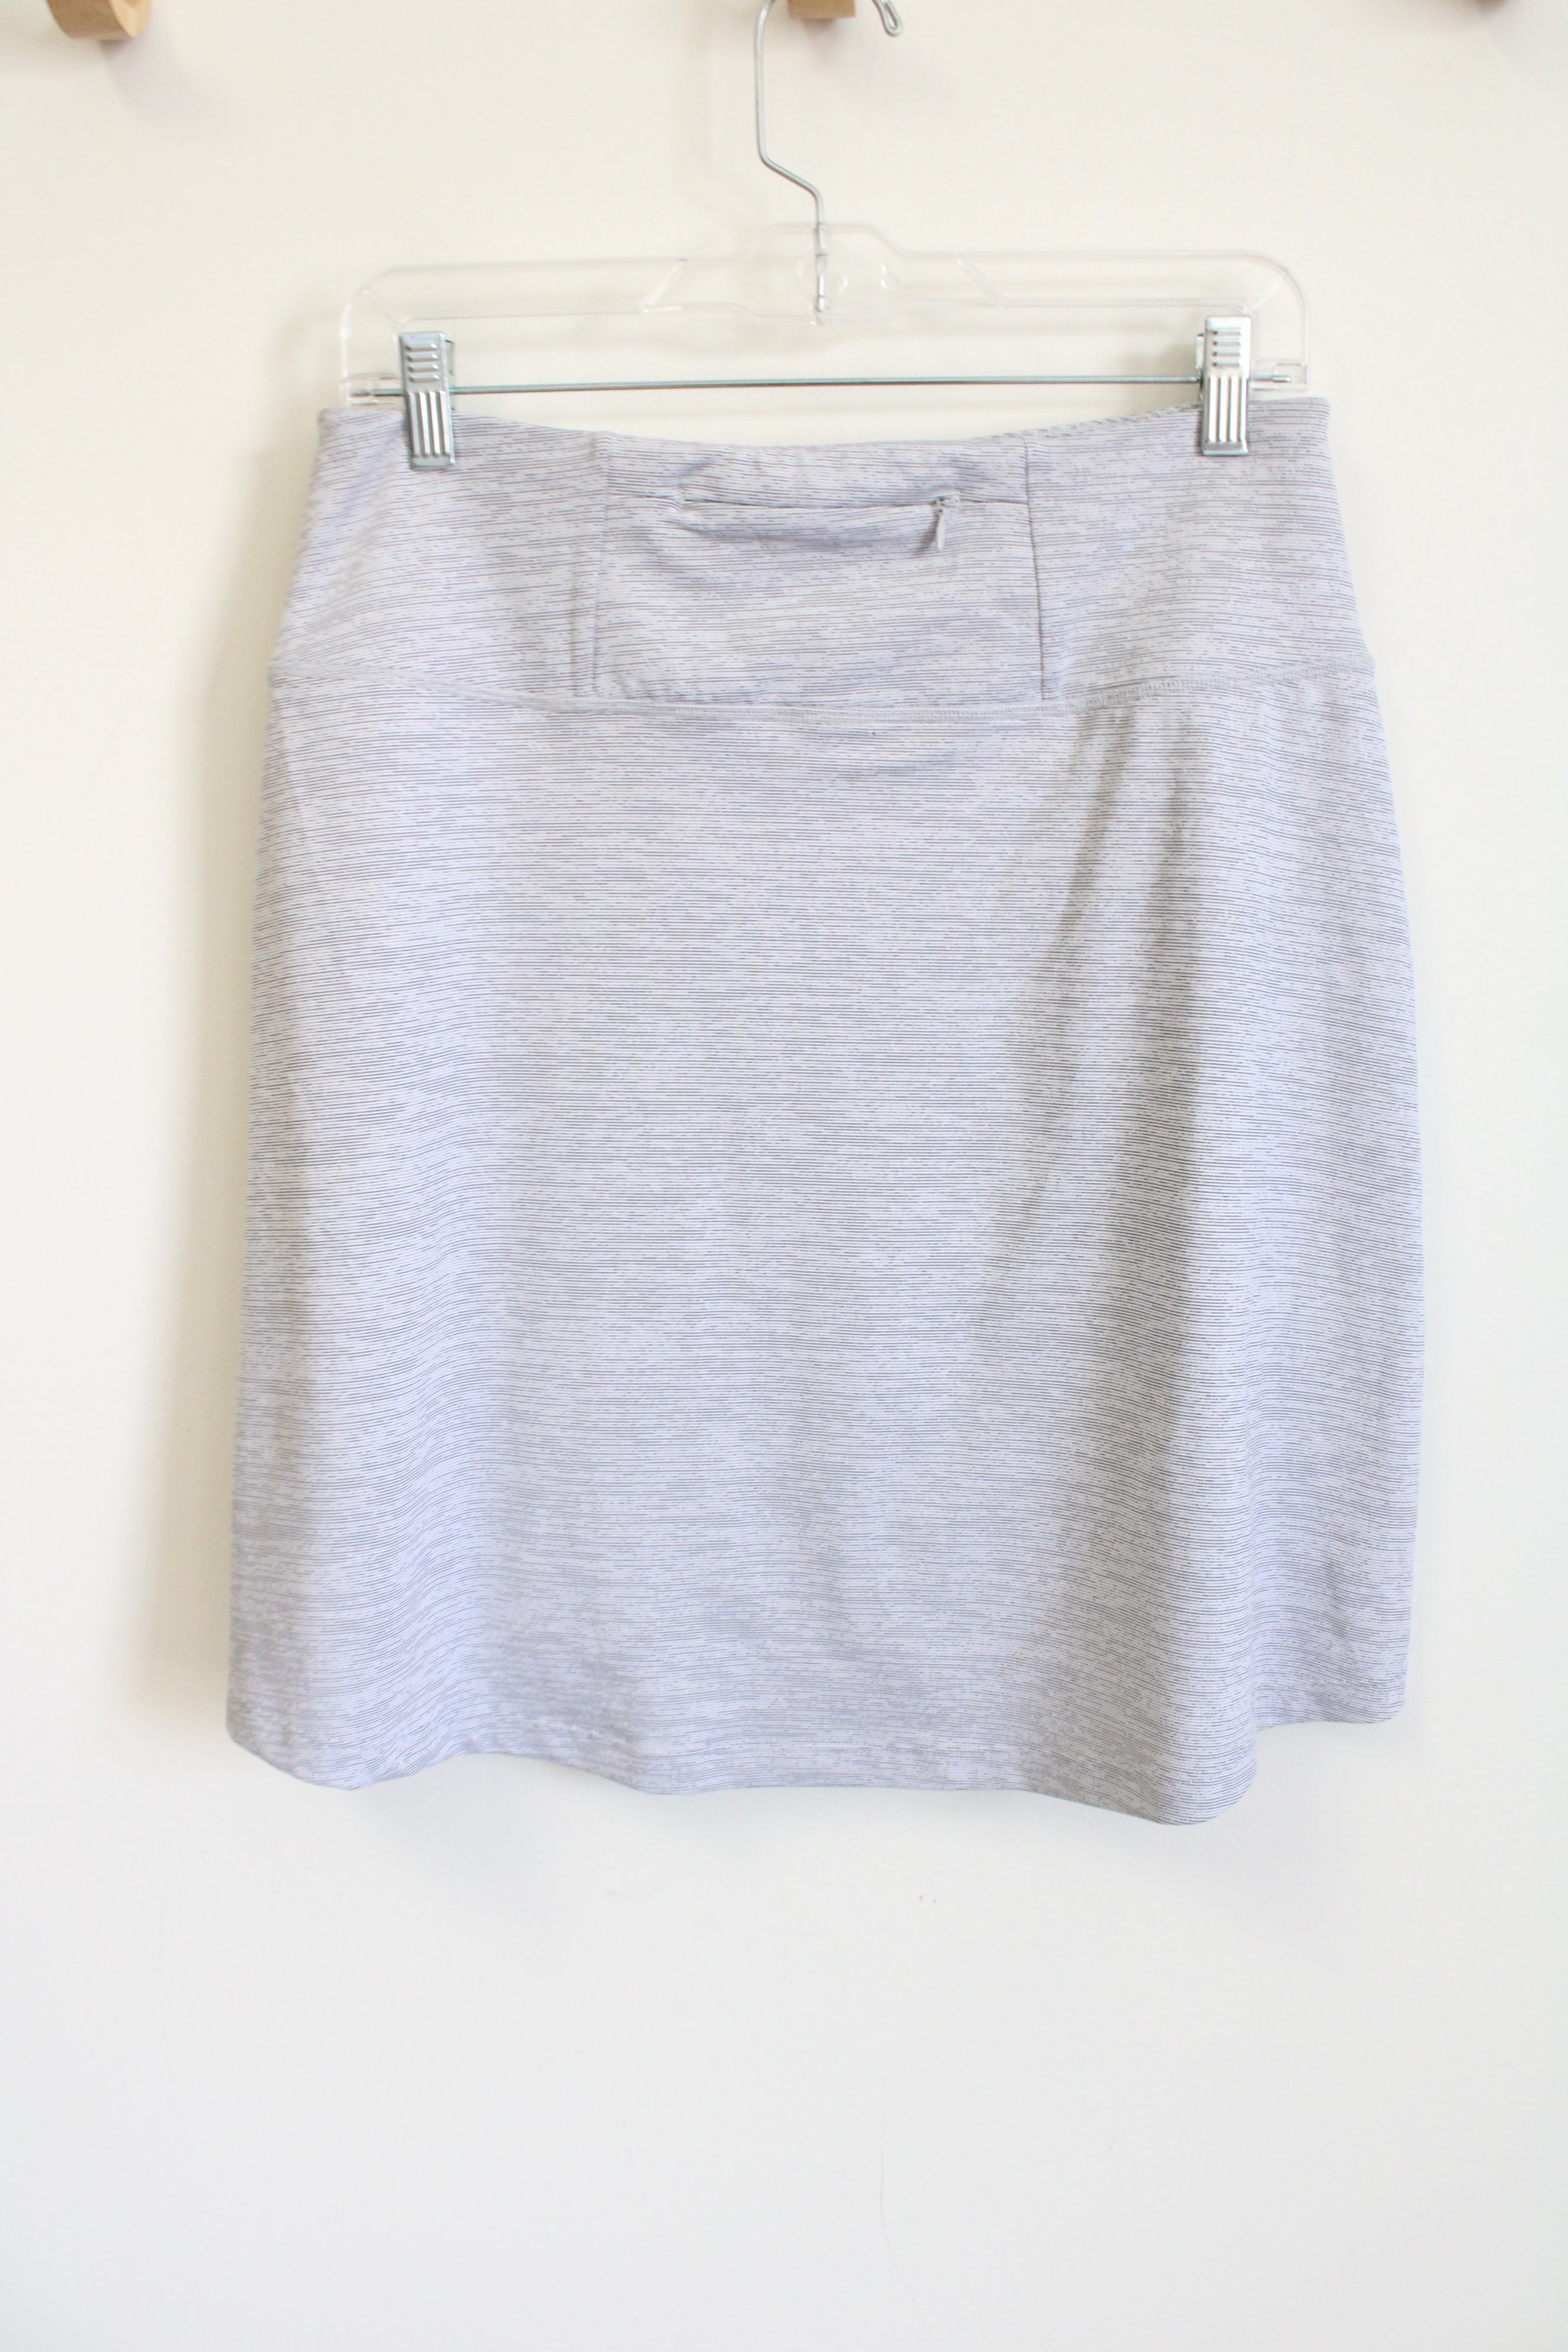 Mondetta Light Gray Athletic Skirt | M